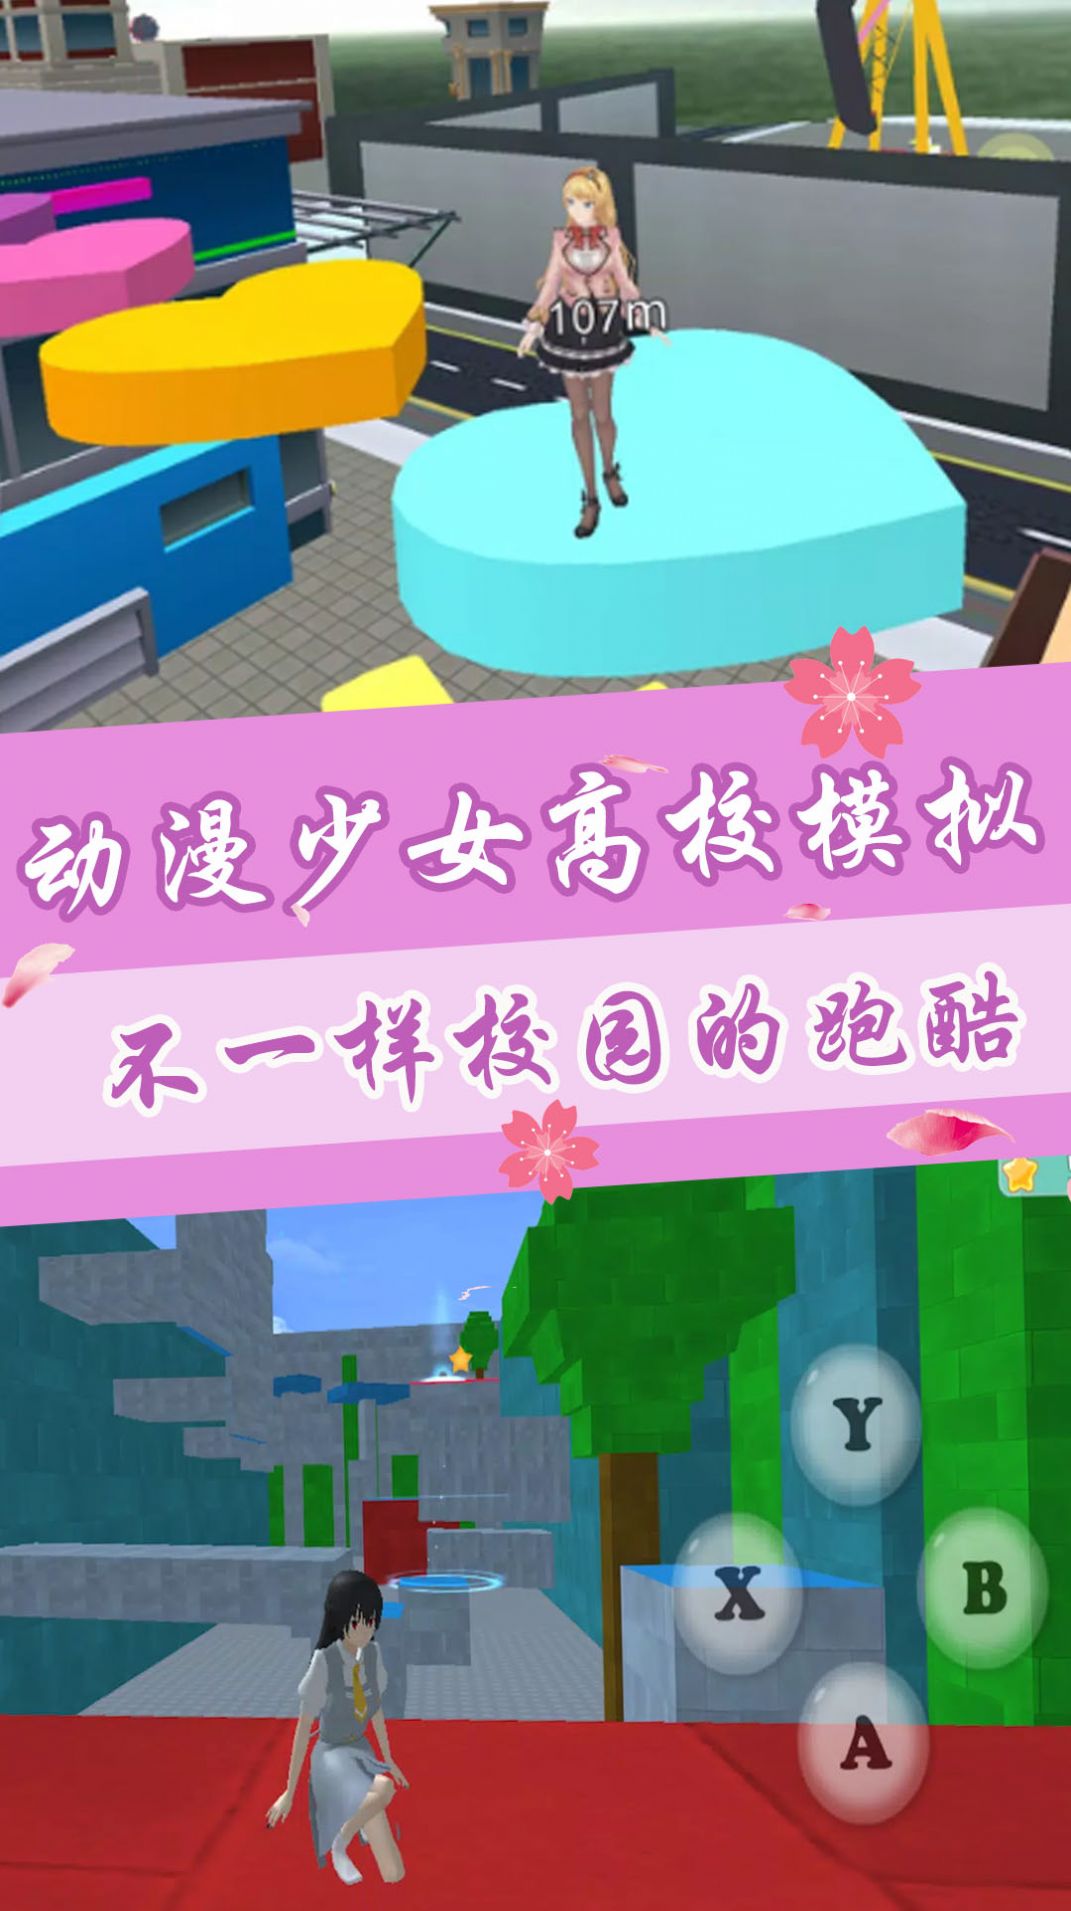 动漫少女高校模拟游戏中文最新版截图2: